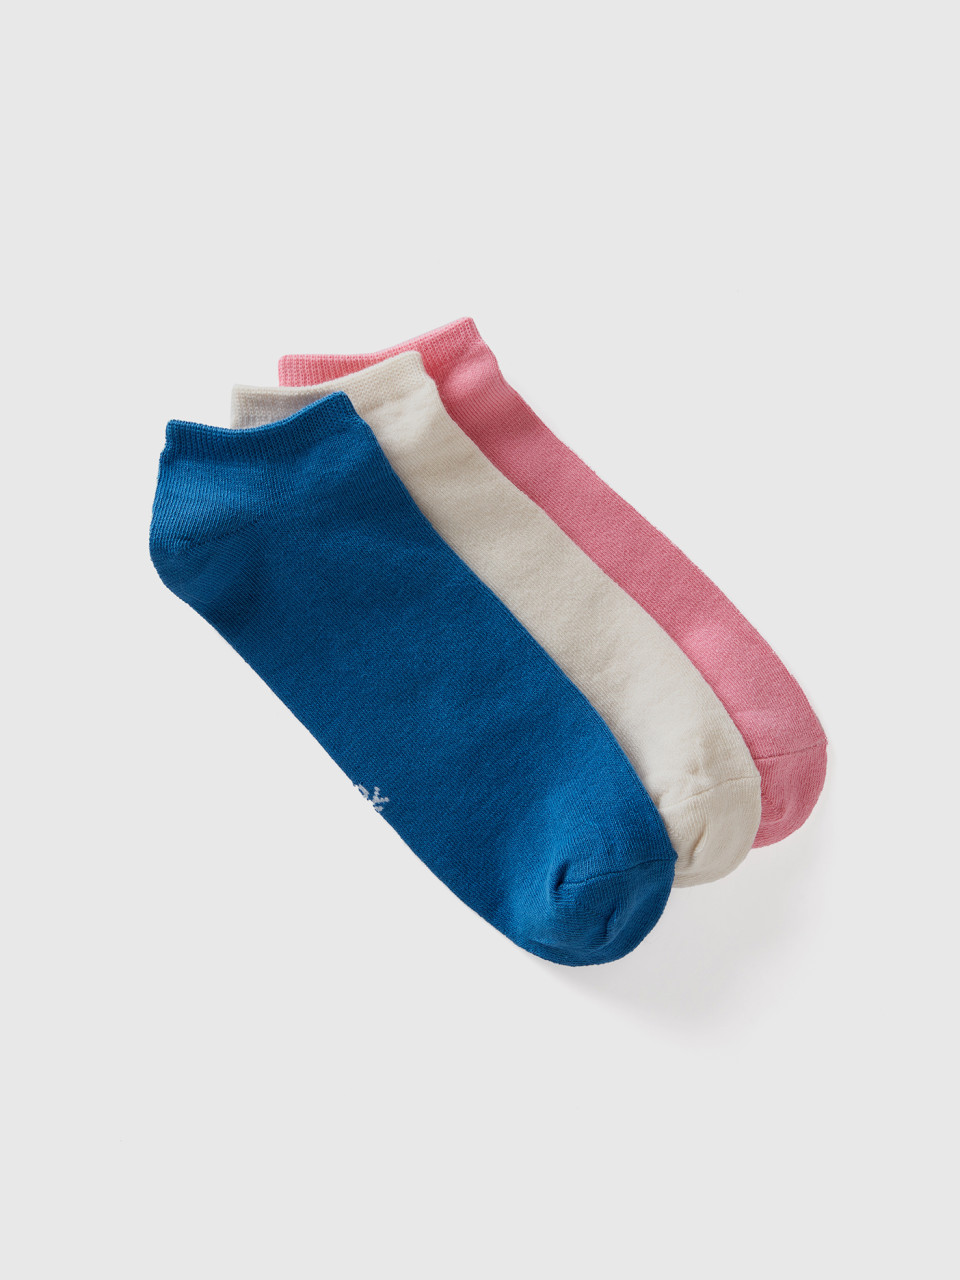 Benetton, Set Of Very Short Socks, Multi-color, Women